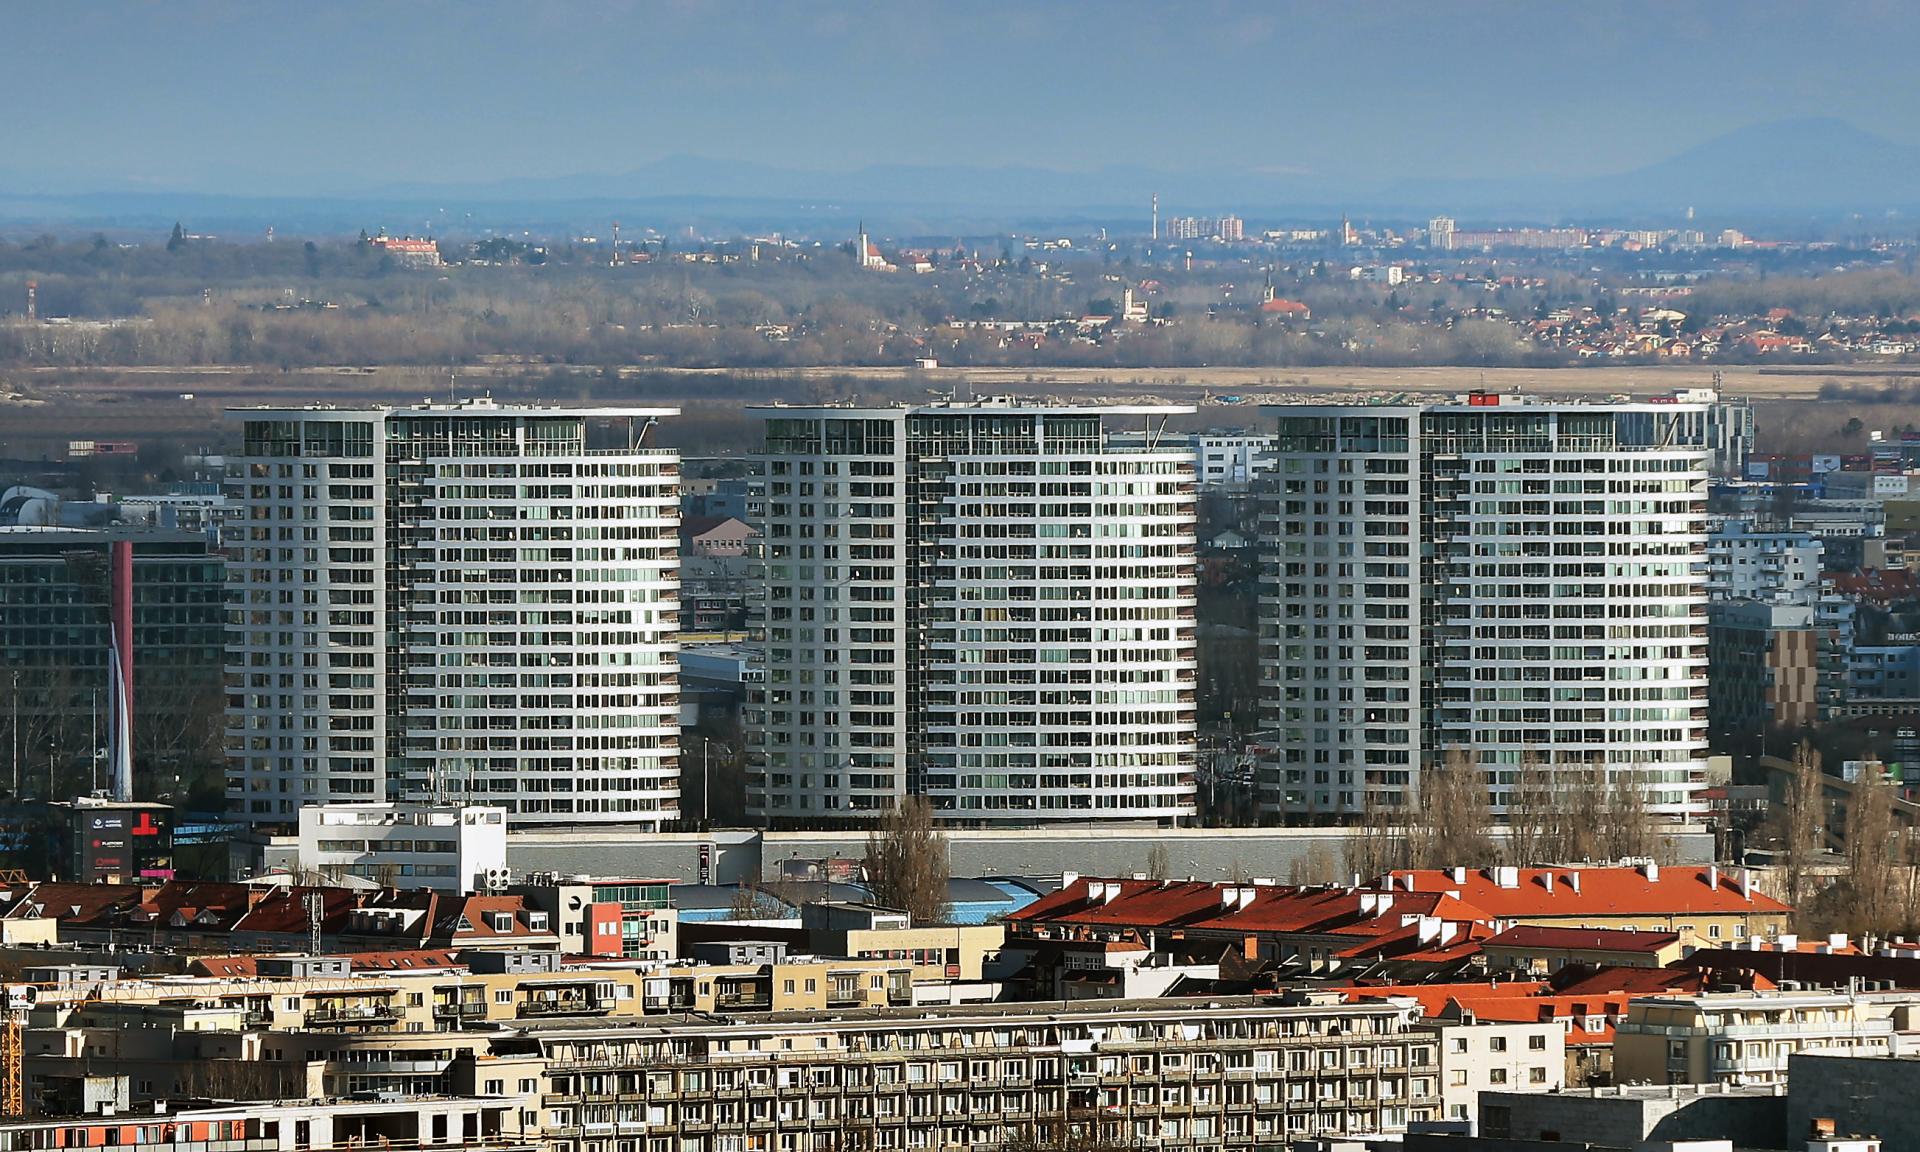 Dvojizbový byt v Bratislave za 760, v Prešove za 490 eur. Aké ceny sú inde a prečo je hlavné mesto drahšie?